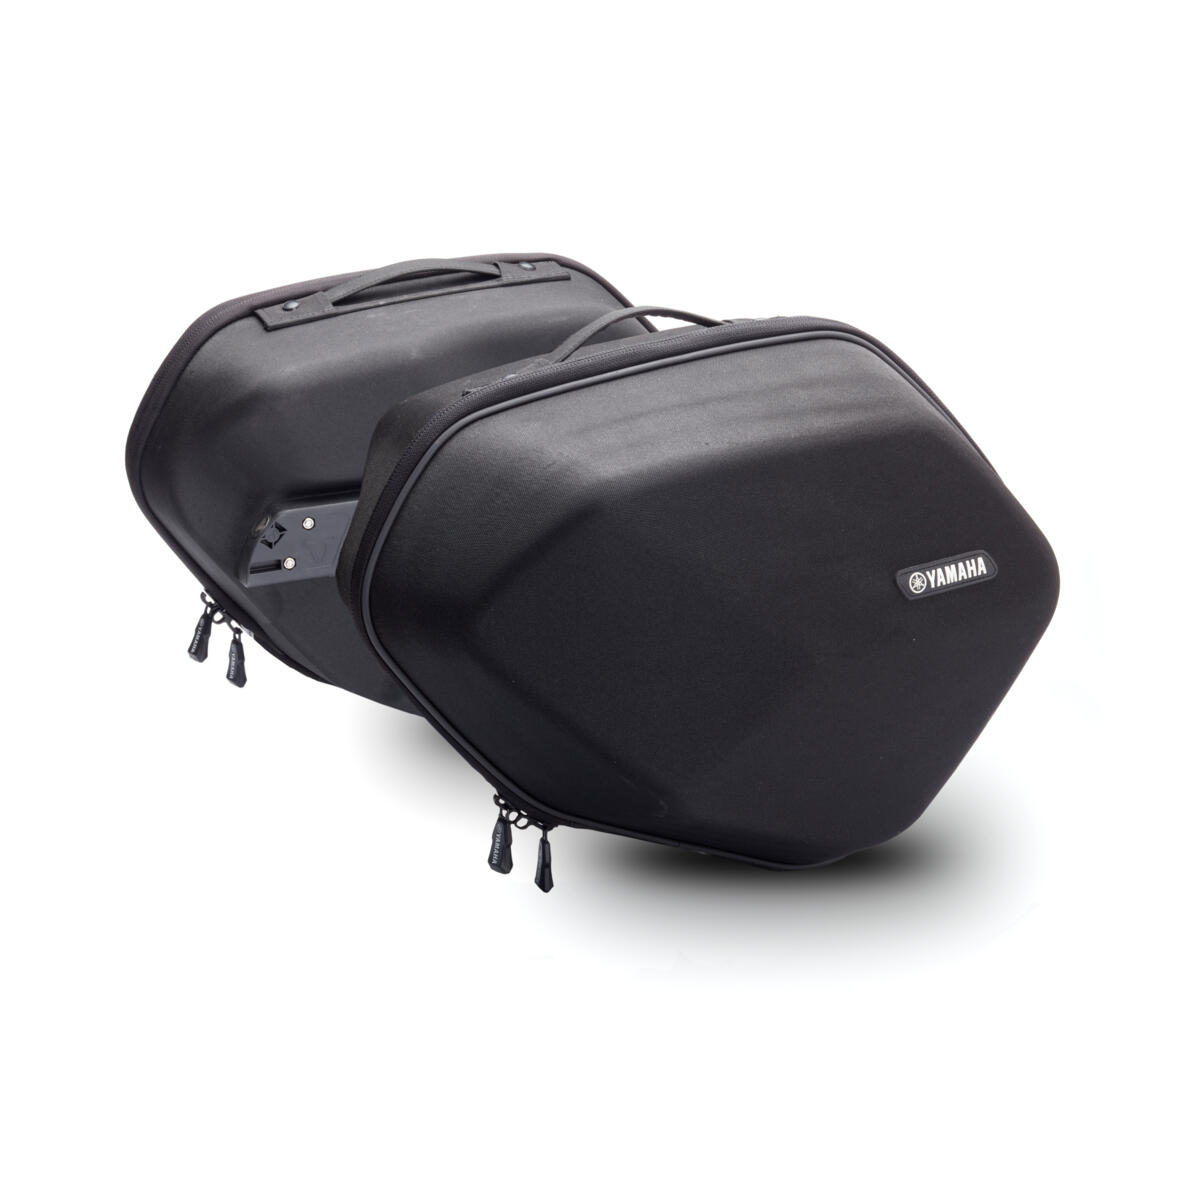 Stijlvolle en functionele zachte zijkofferset van ABS voor extra bagagecapaciteit op lange toerritten